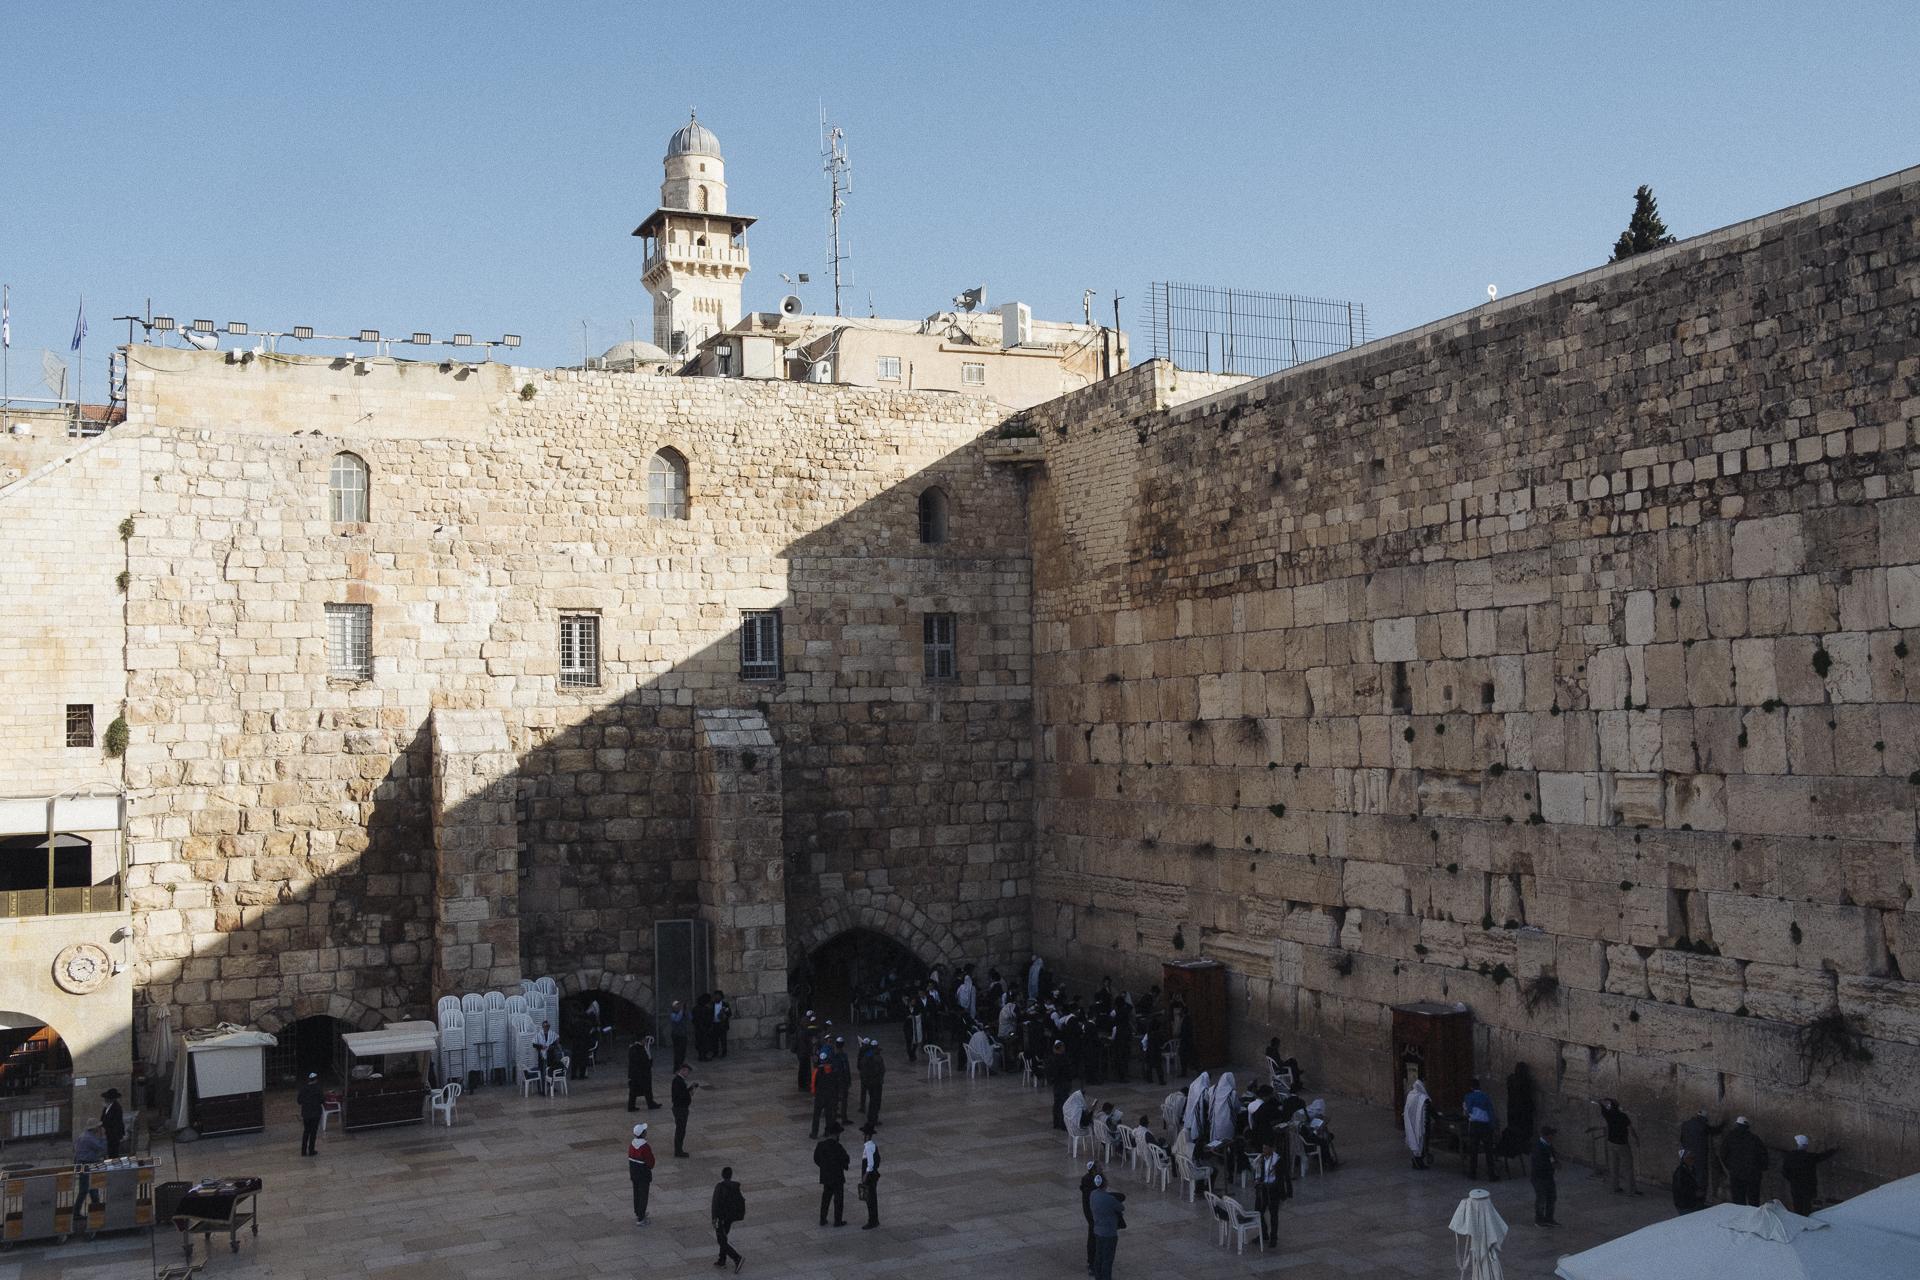 Au nom de tous les Saints - Western Wall. Jerusalem, February 13, 2020.
Mur des...